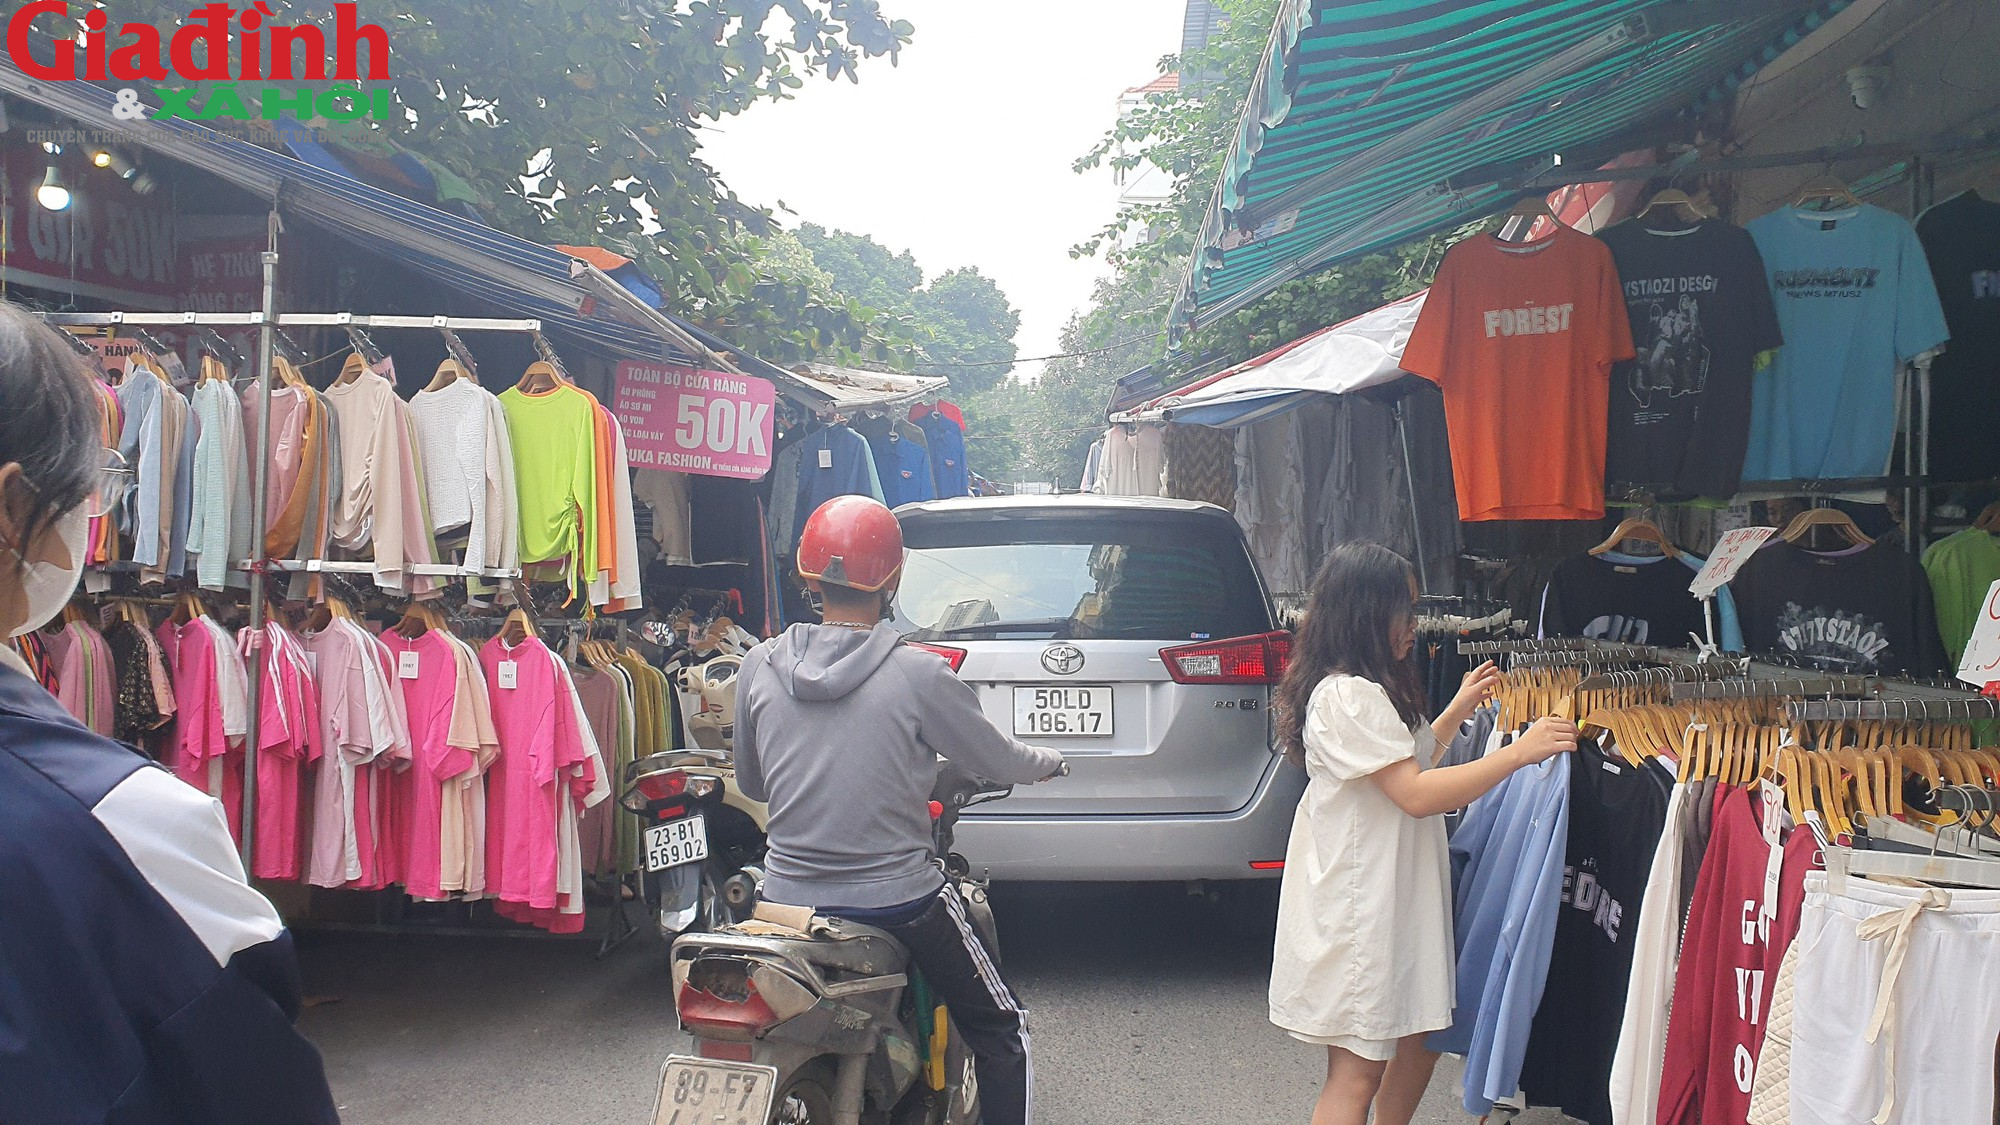 Hà Nội: Đường Phan Văn Trường đang bị chiếm dụng bởi ‘thiên đường mua sắm’ giới trẻ  - Ảnh 6.